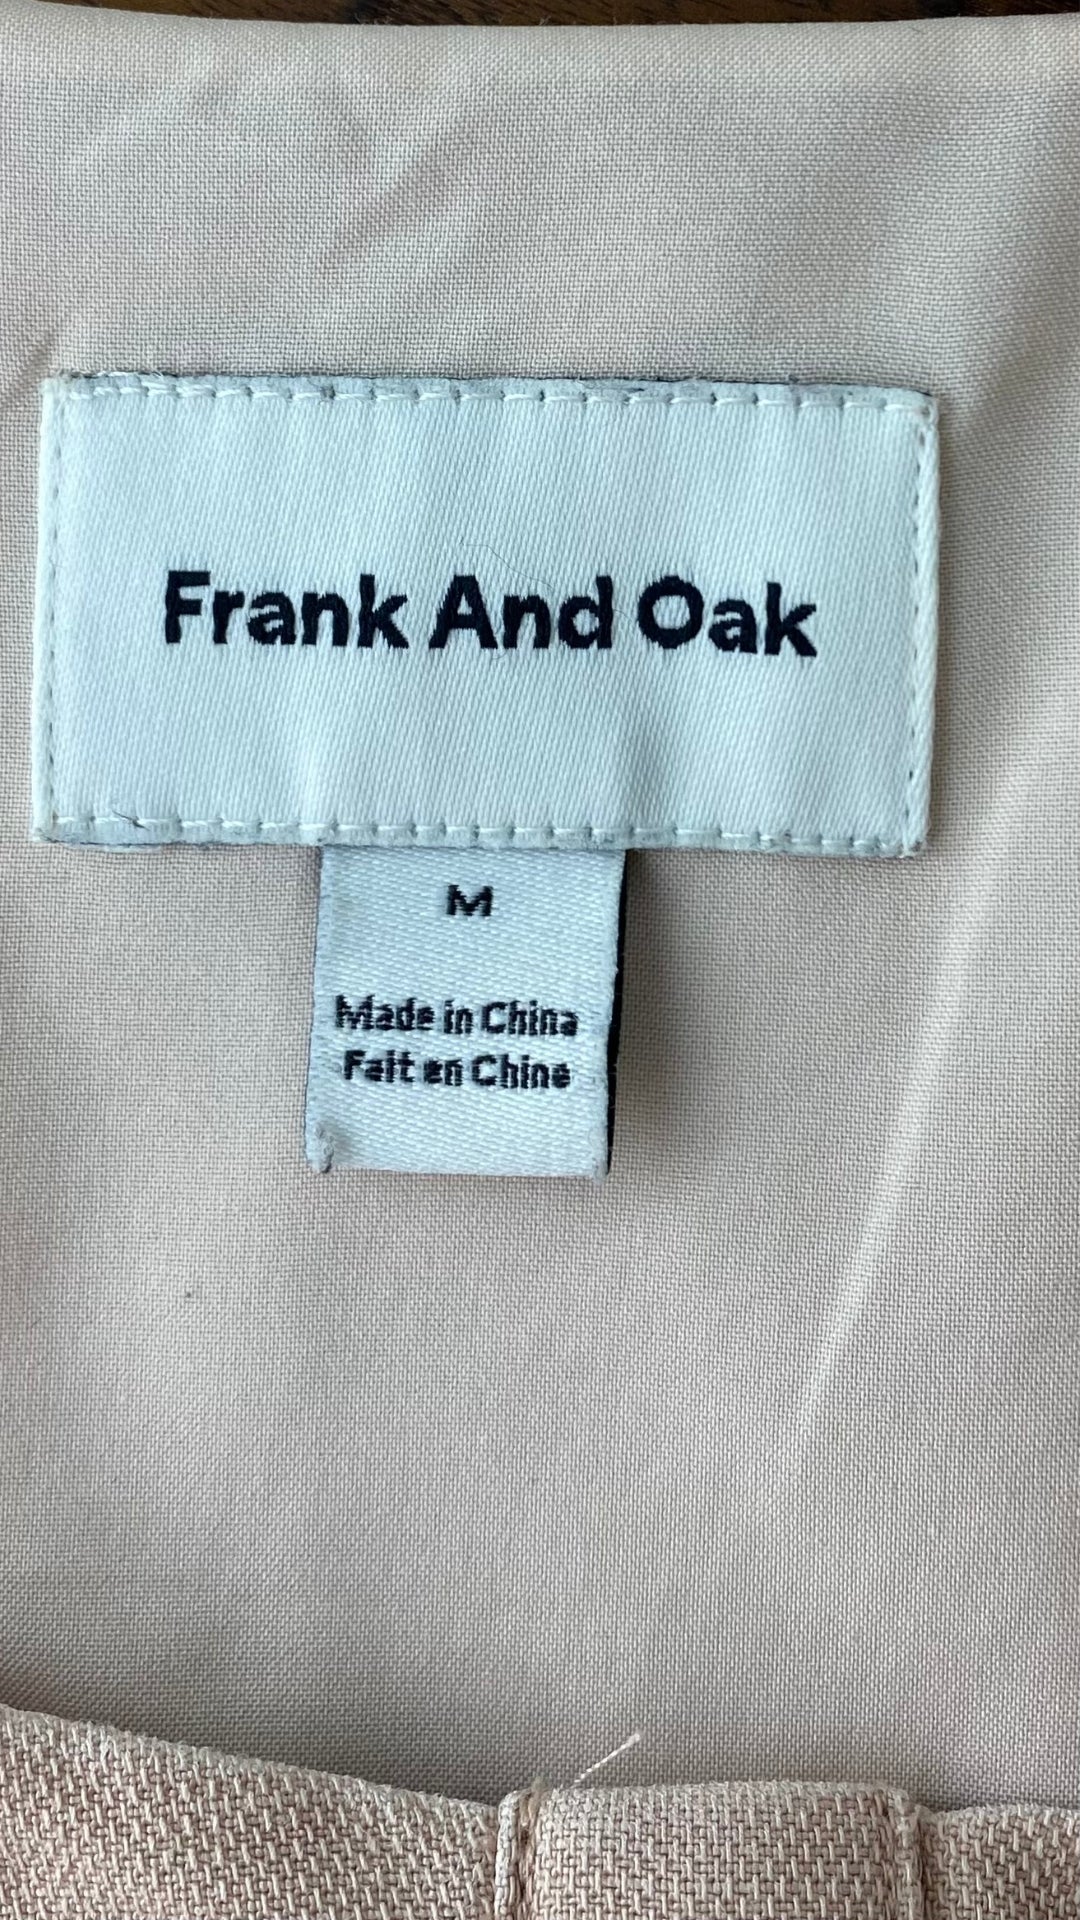 Robe seconde main en Tencel et lin vieux rose Frank And Oak, taille medium. Vue de l'étiquette de marque et taille.